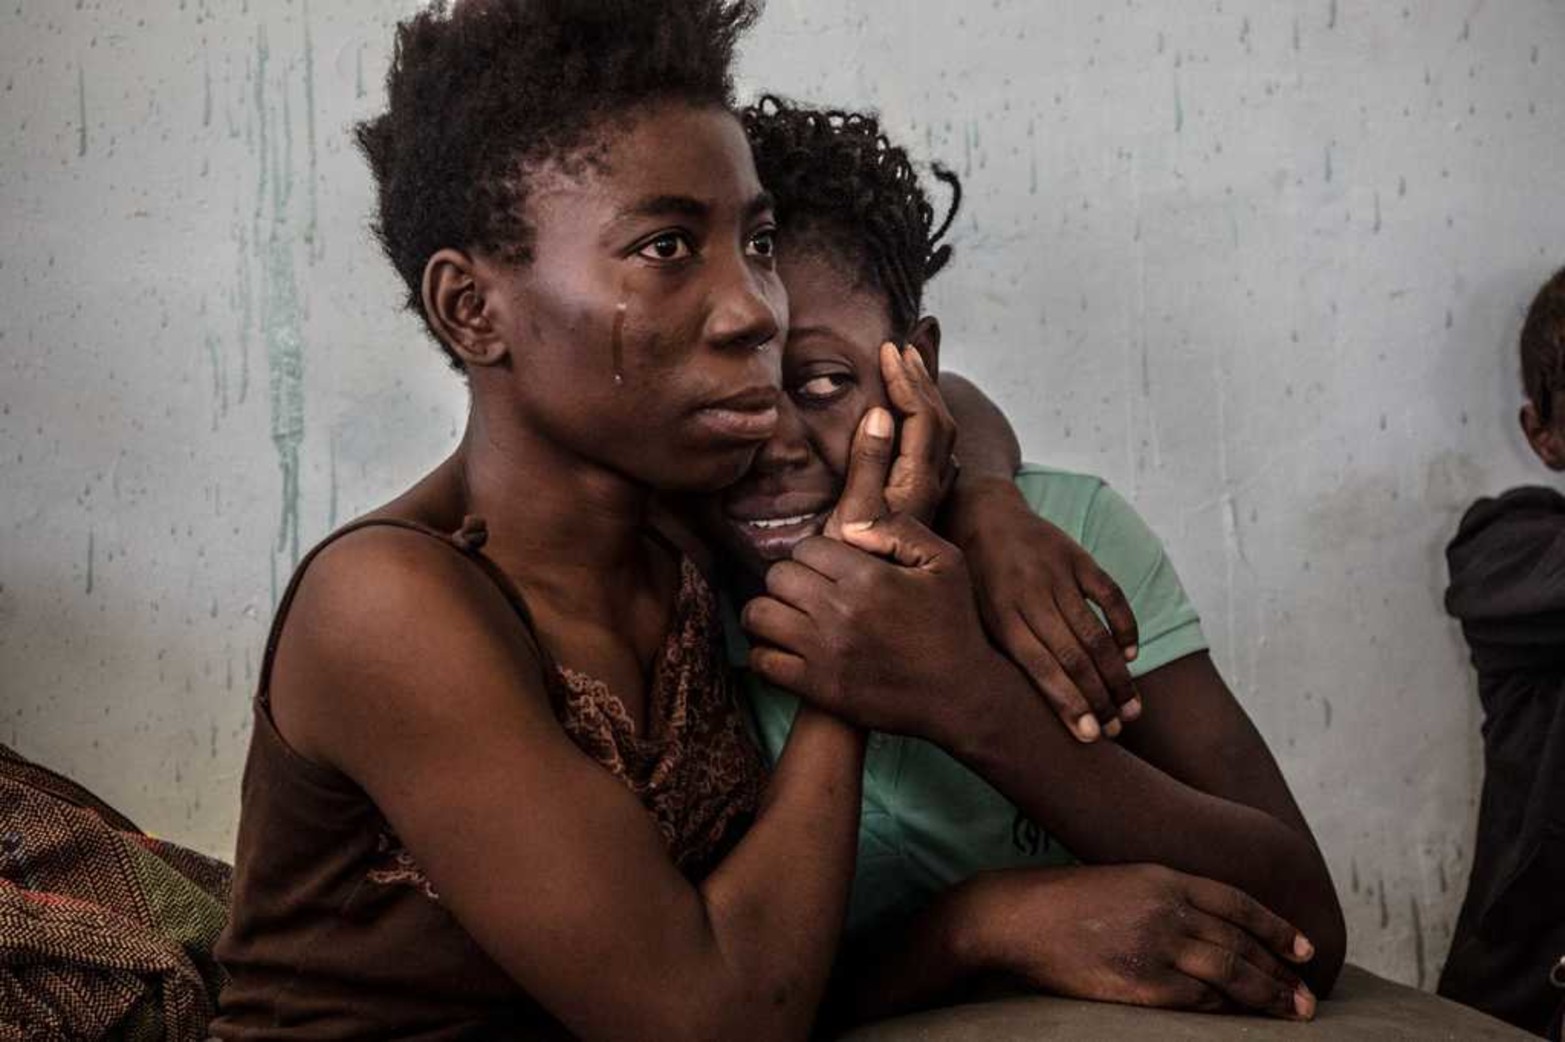 Dos refugiados nigerianos en un centro de detención en Surman, Libia, el 17/08/2016. La fotografía de Daniel Etter obtuvo el tercer premio de Temas Contemporáneos.